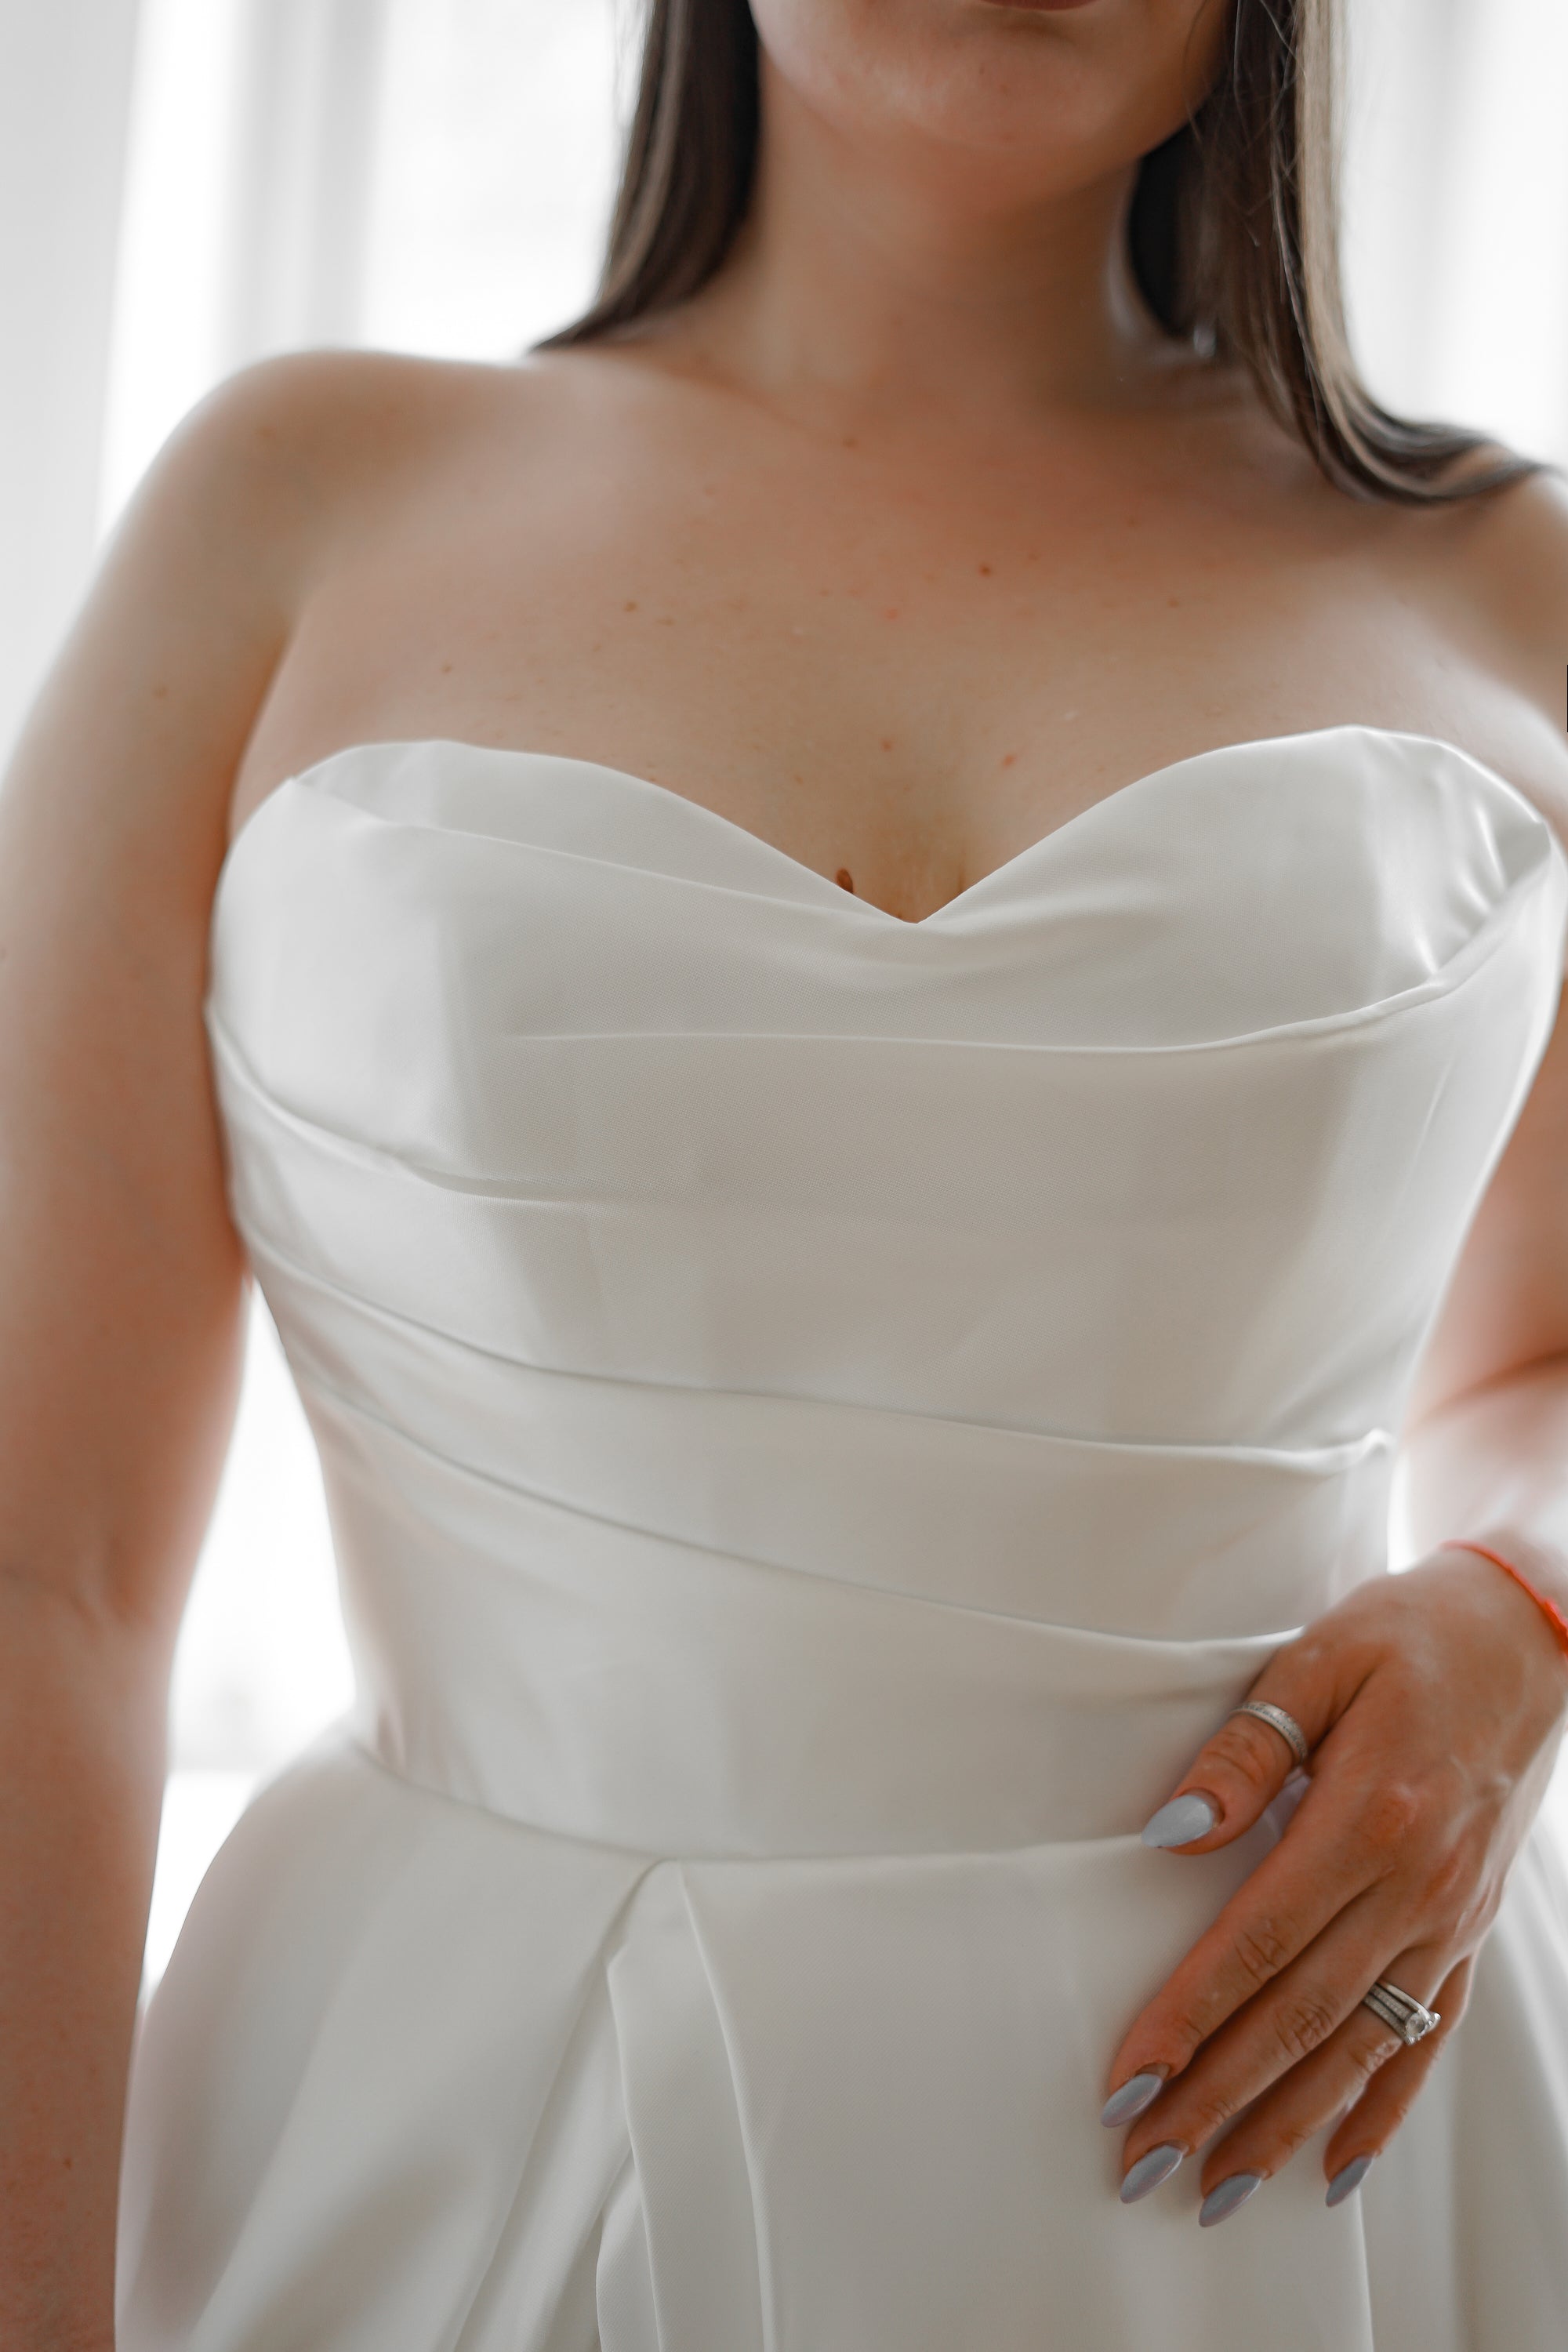 Mikado Wedding Dress Chloe with Front Slit – Olivia Bottega